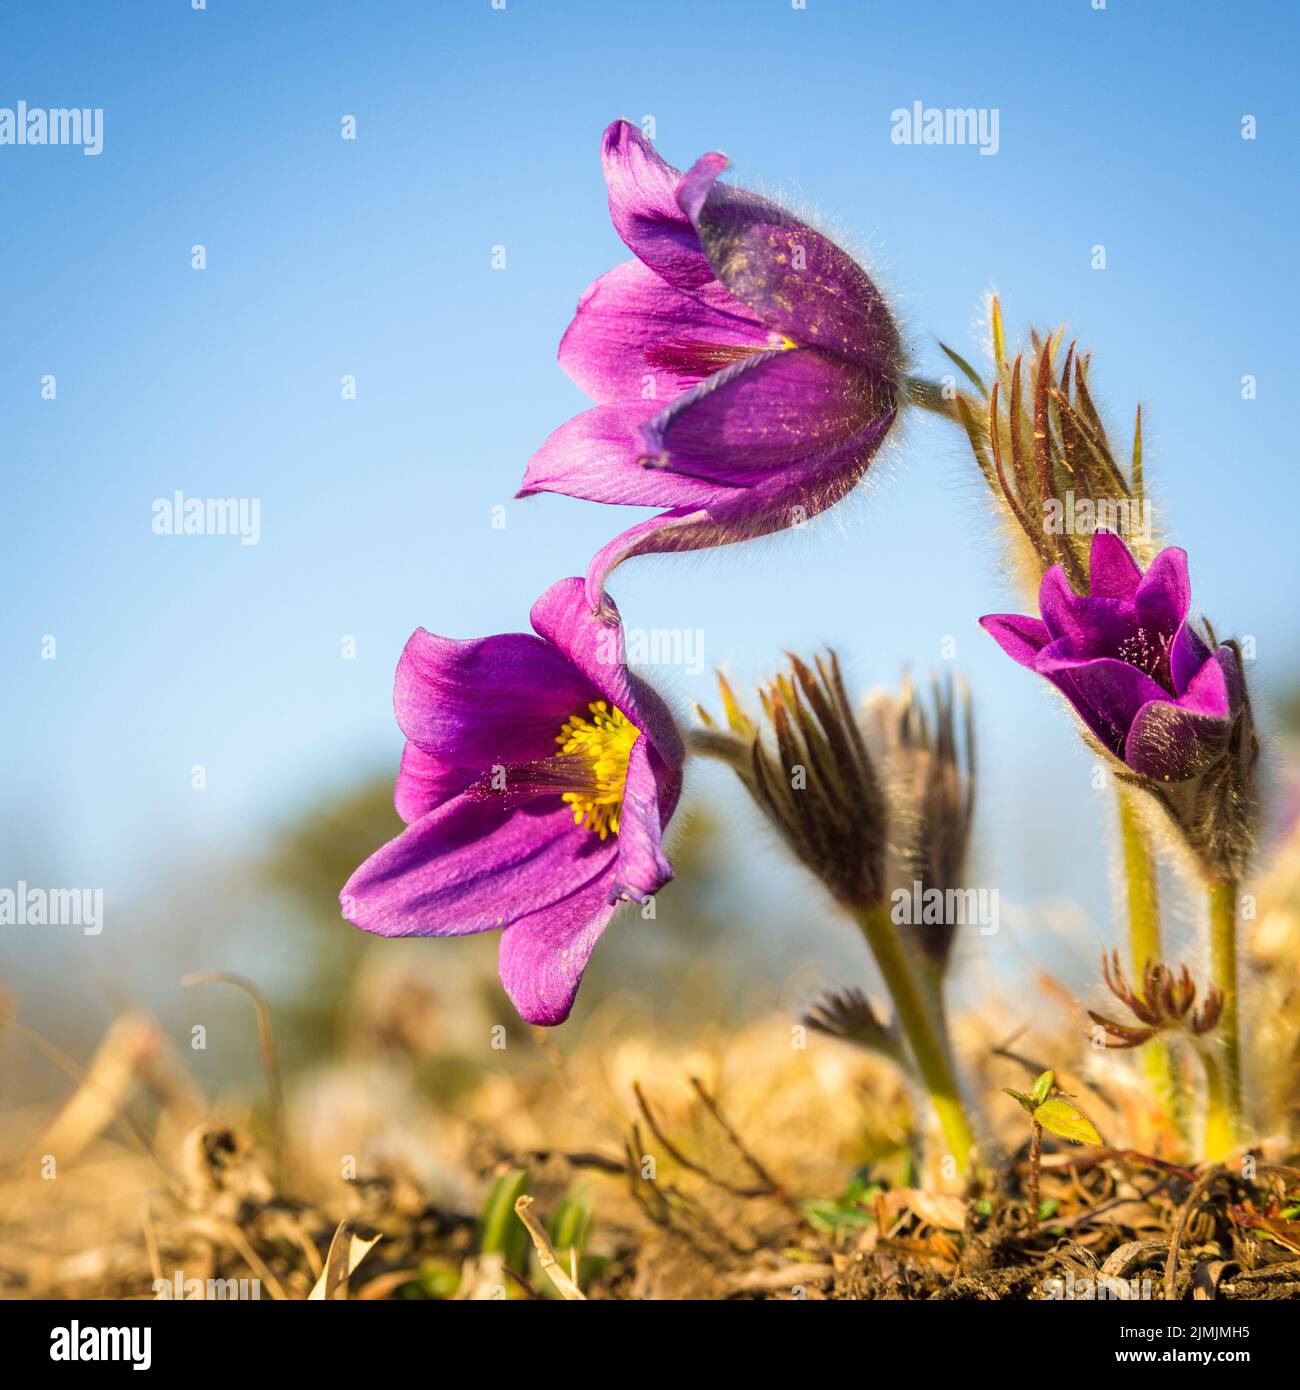 Primer plano de una flor de pasque púrpura imaginado durante la primavera Foto de stock